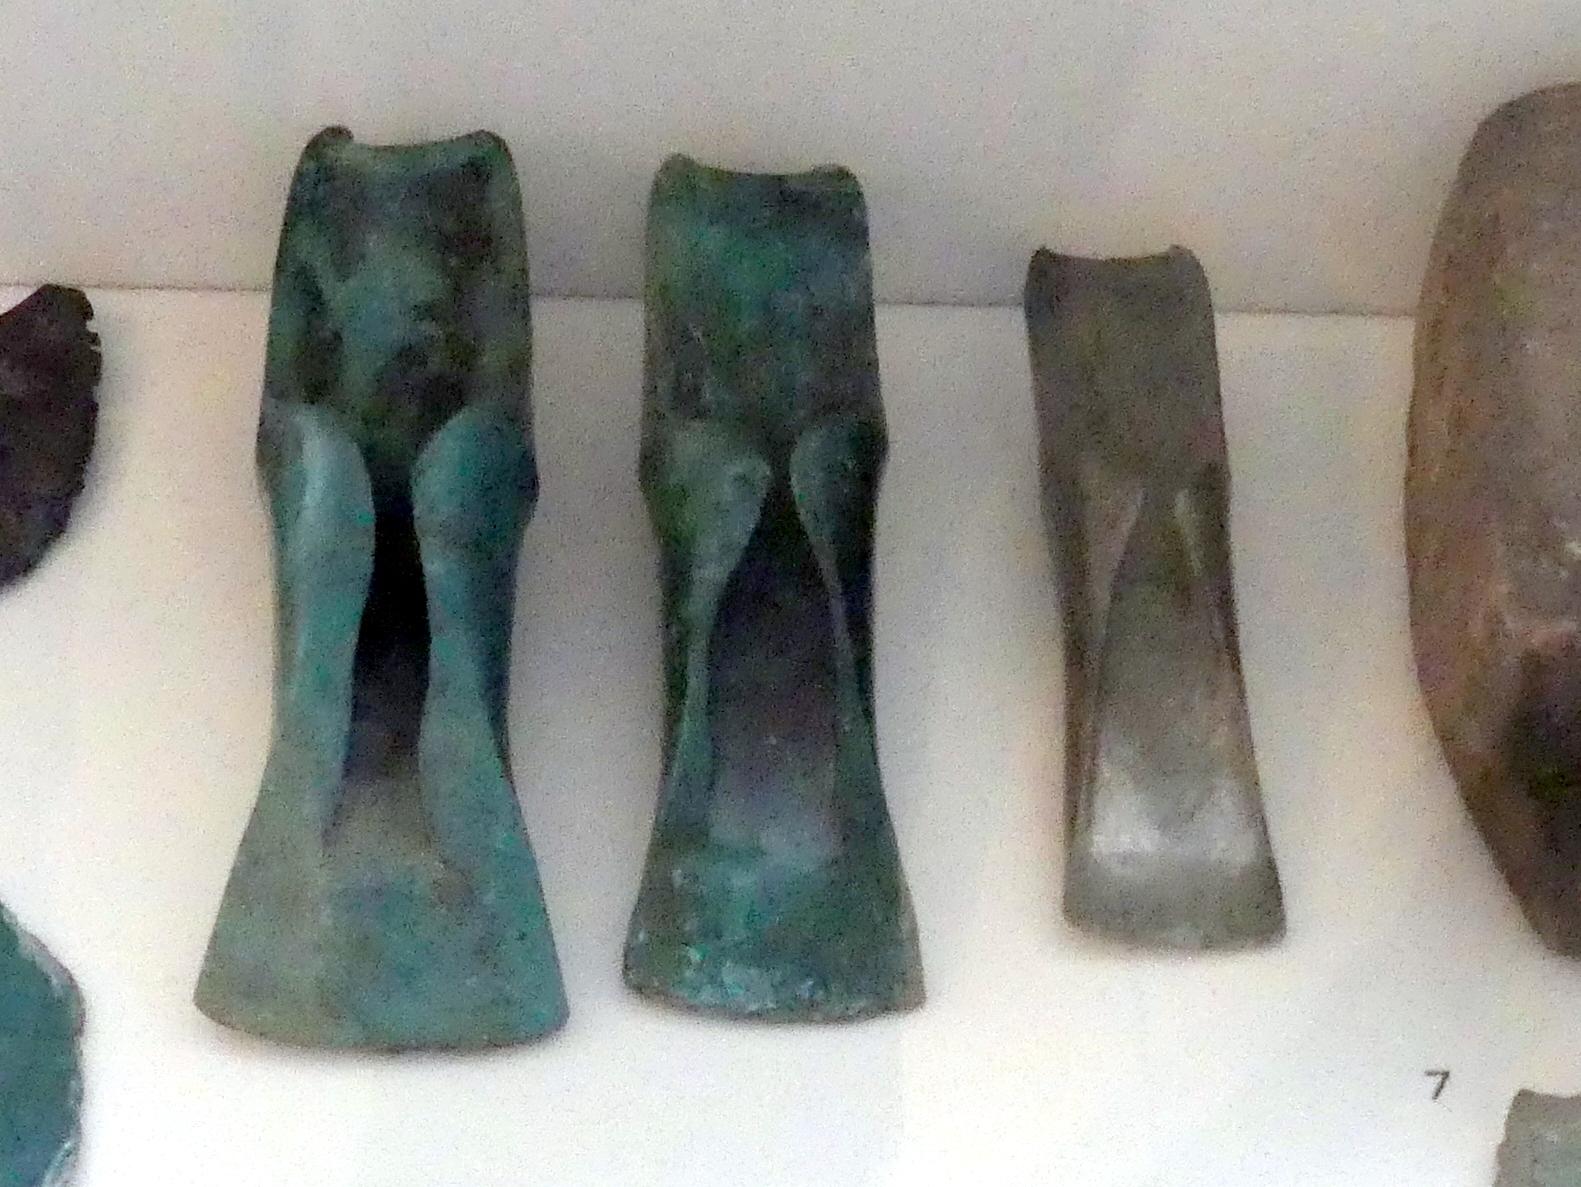 Lappenbeile, Urnenfelderzeit, 1400 - 700 v. Chr., 1300 - 1200 v. Chr., Bild 1/2